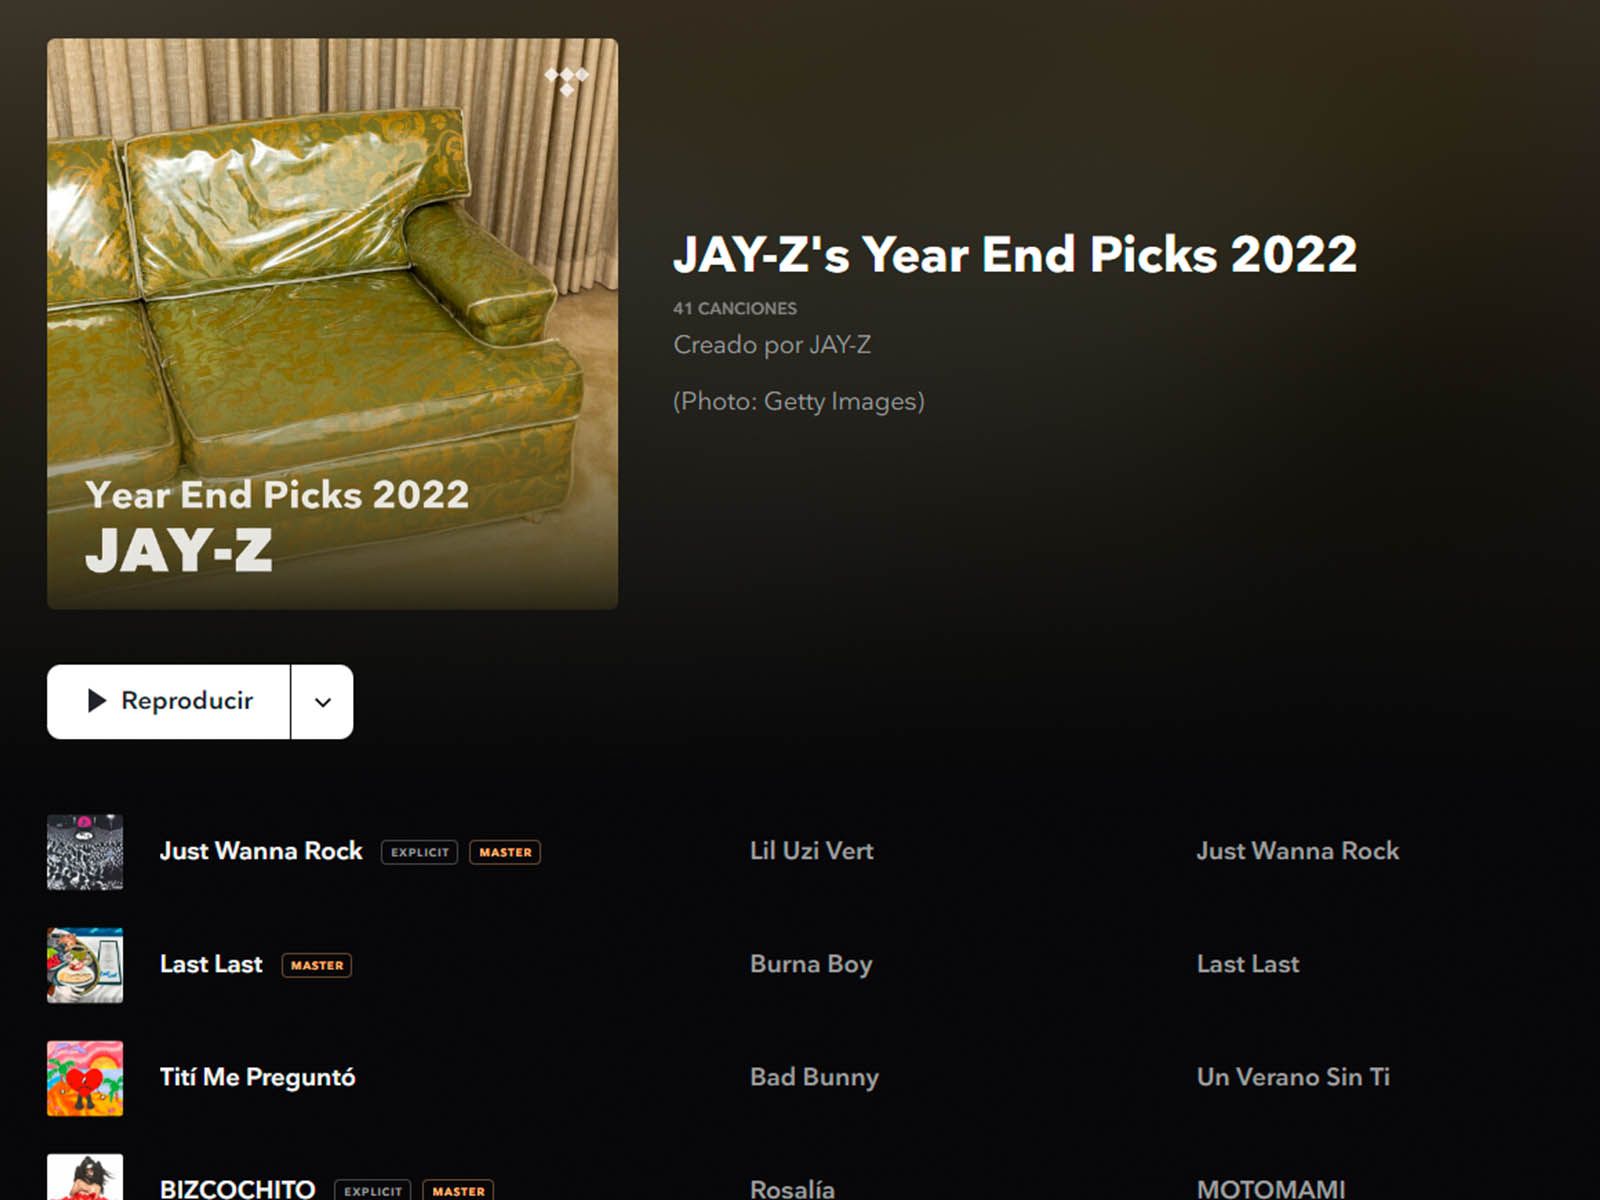 Estos son los artistas que Jay-Z ha añadido a su playlist de final de año